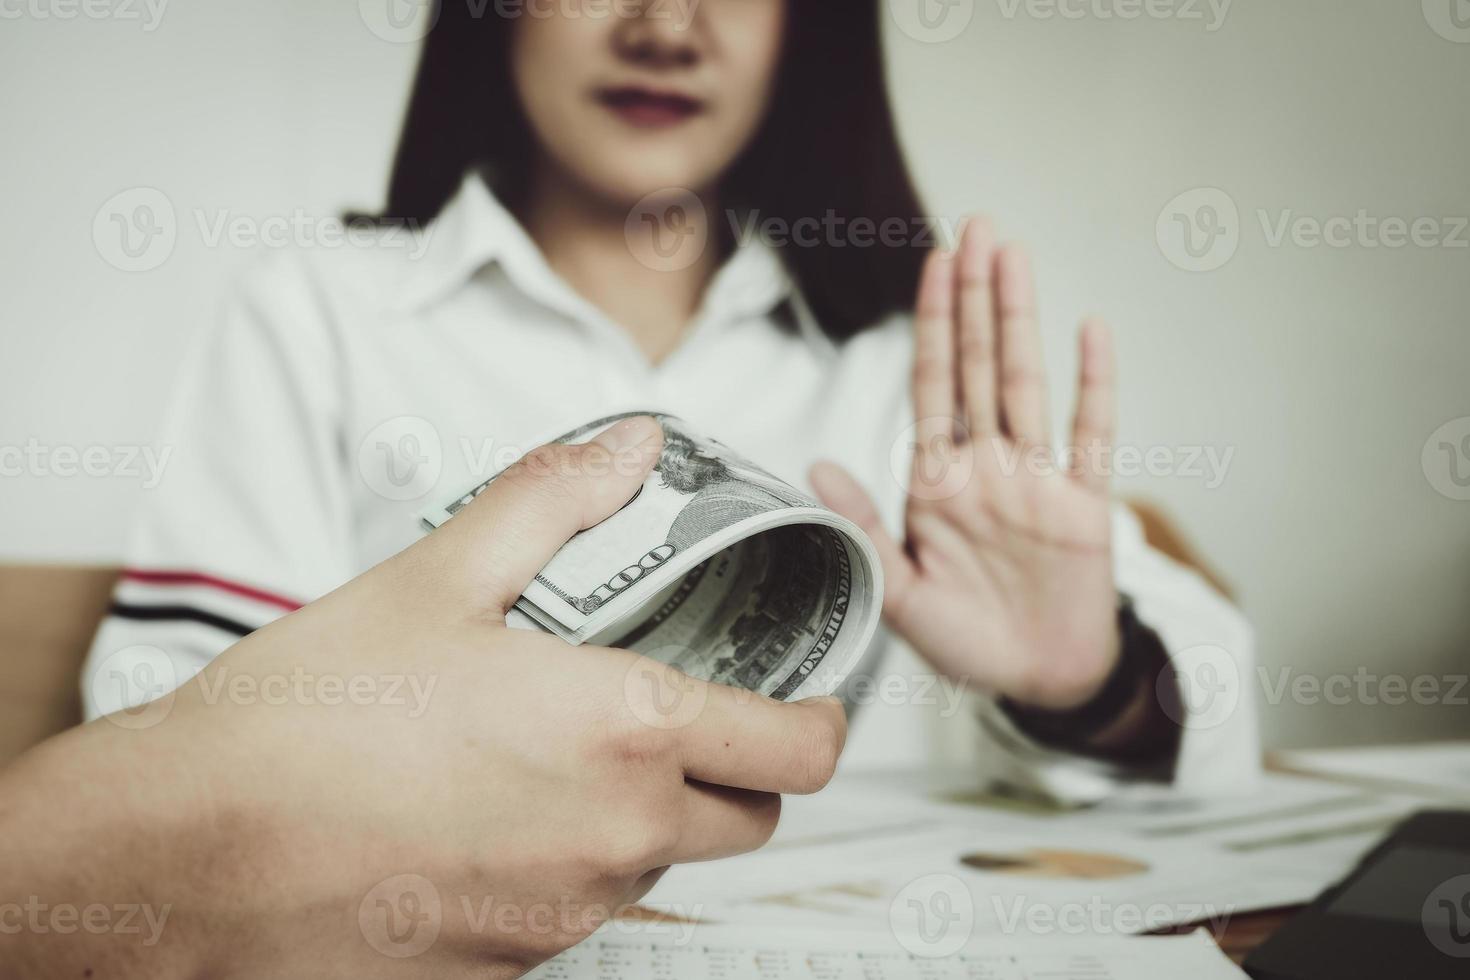 focus hand met geld, de auditor toont een gebaar van weigering om geld te ontvangen van de omkoping van de officier. foto